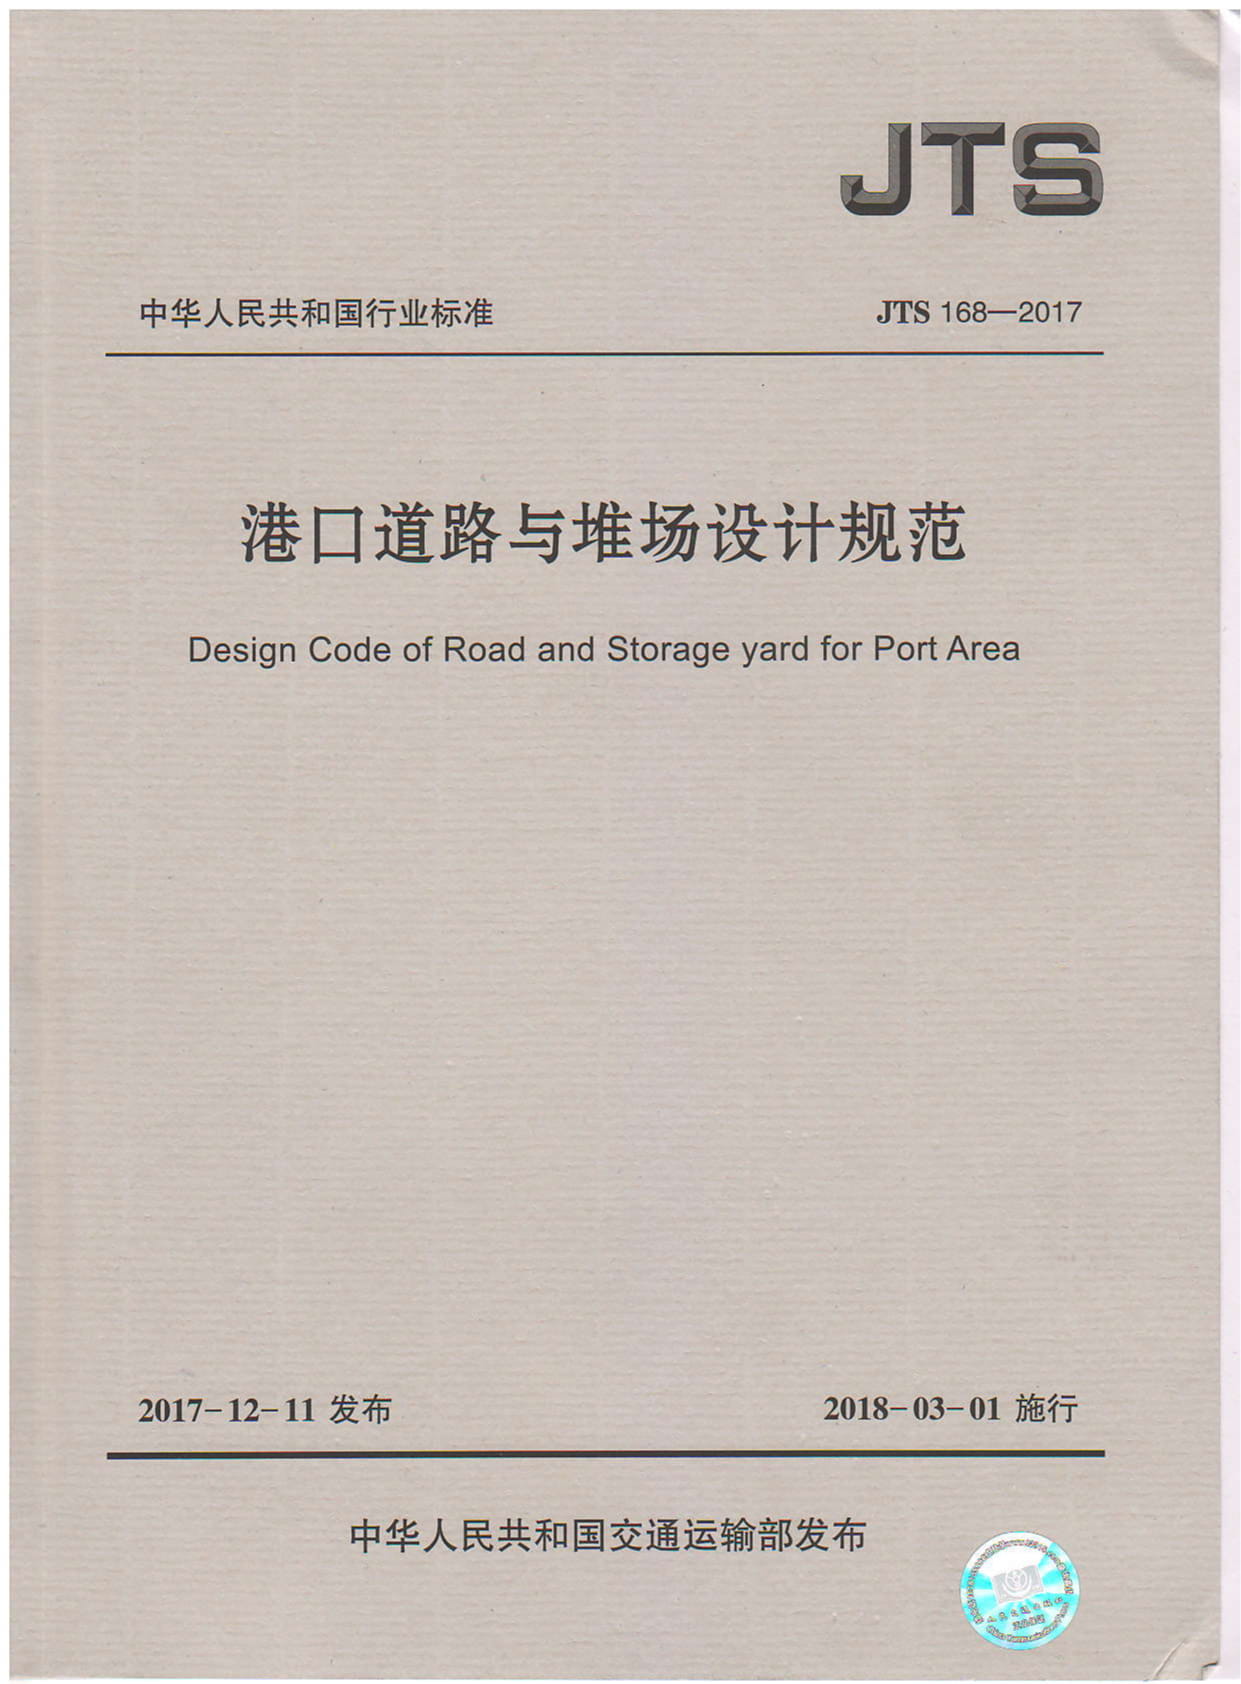 JTS 168-2017 港口道路与堆场设计规范